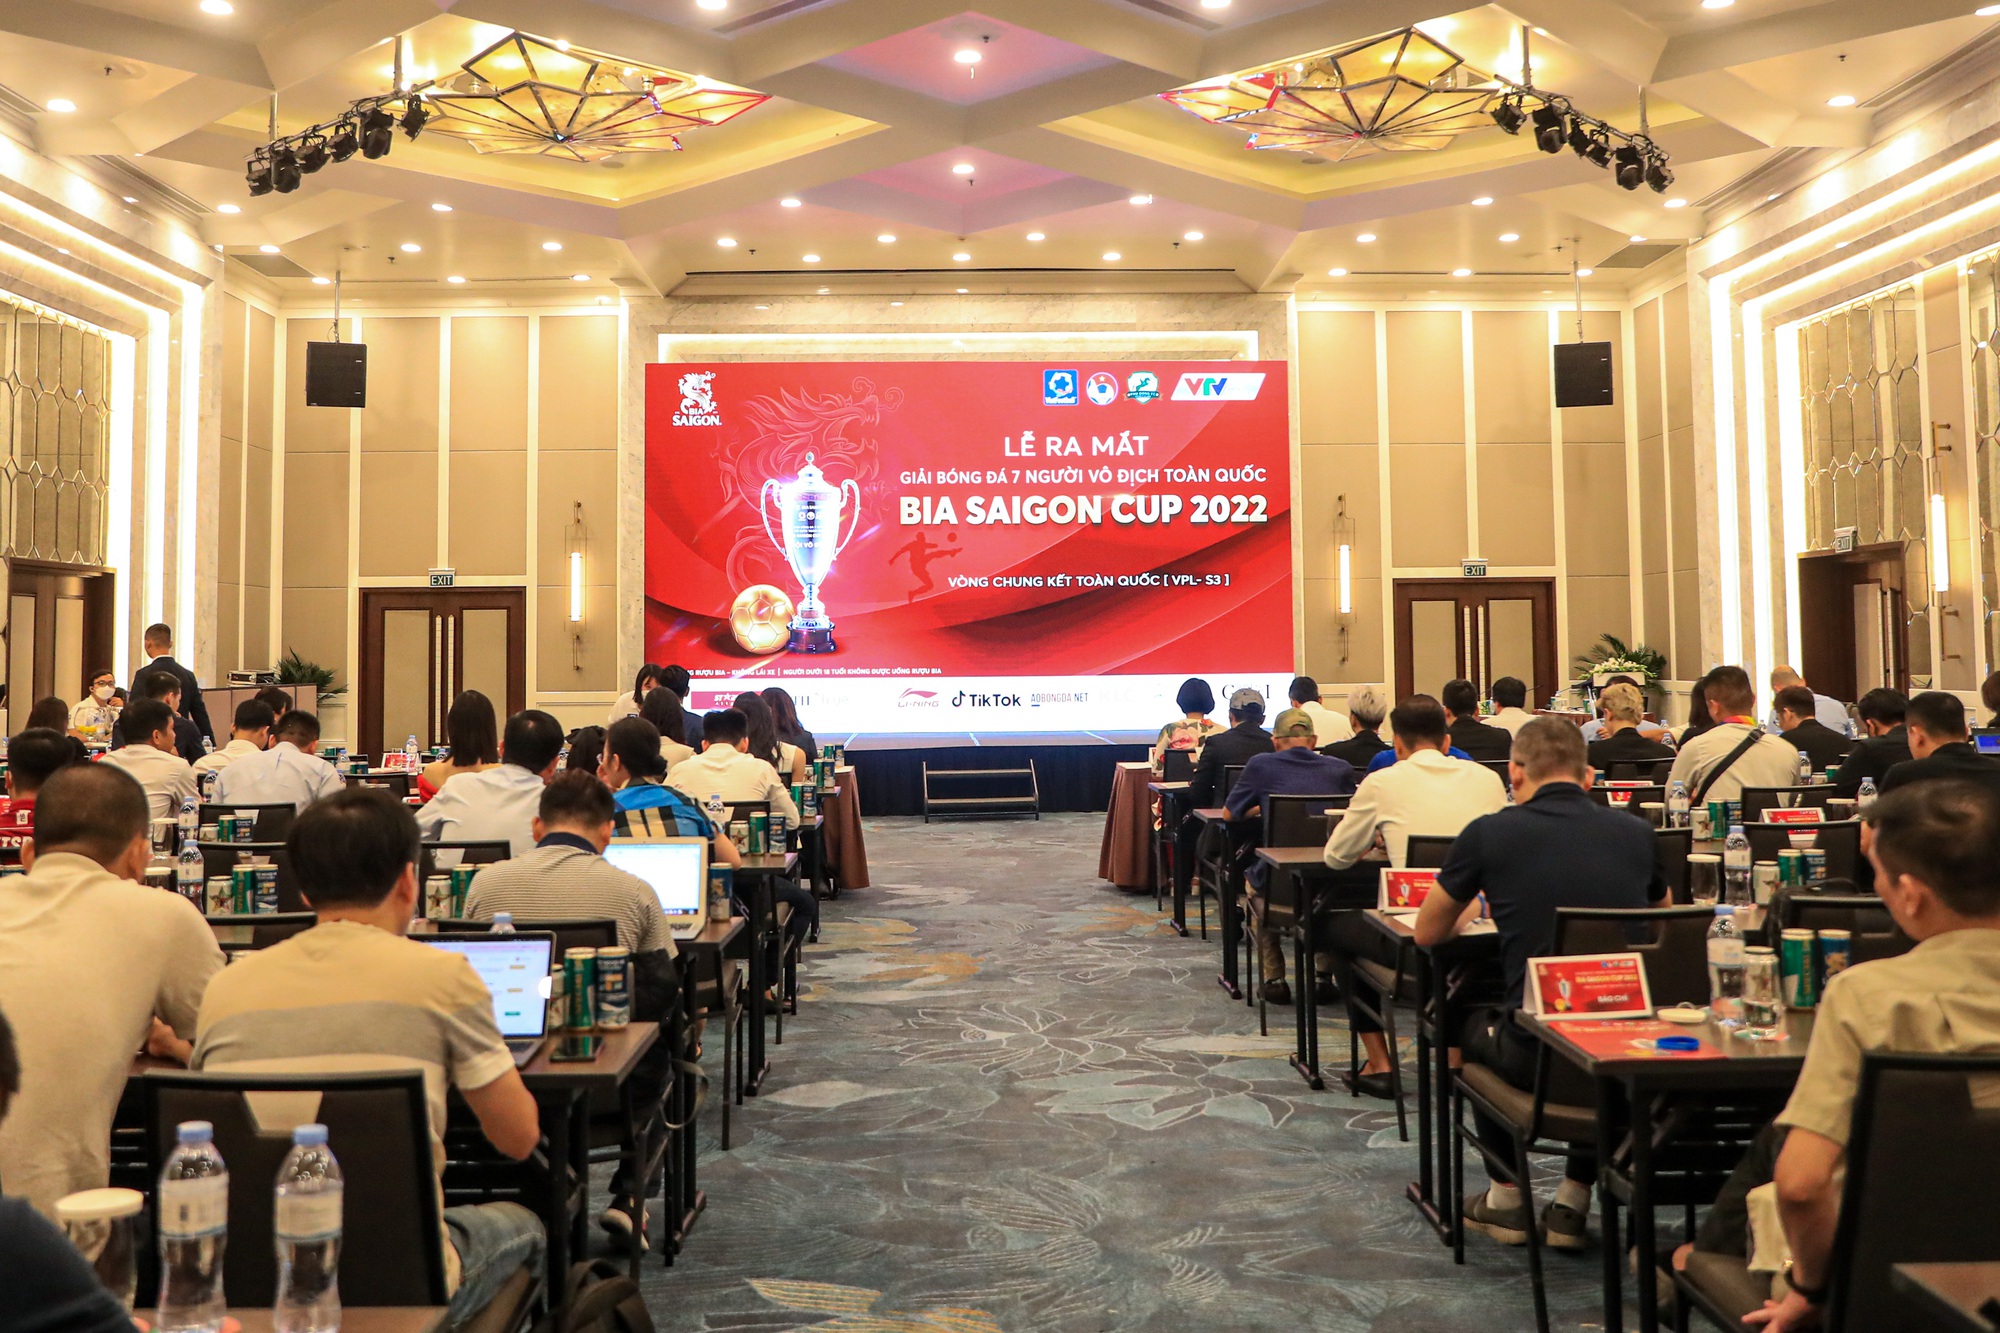 Giải bóng đá 7 người: Đội vô địch sẽ có cơ hội đá 'so tài' cùng với đội tuyển Việt Nam - Ảnh 1.